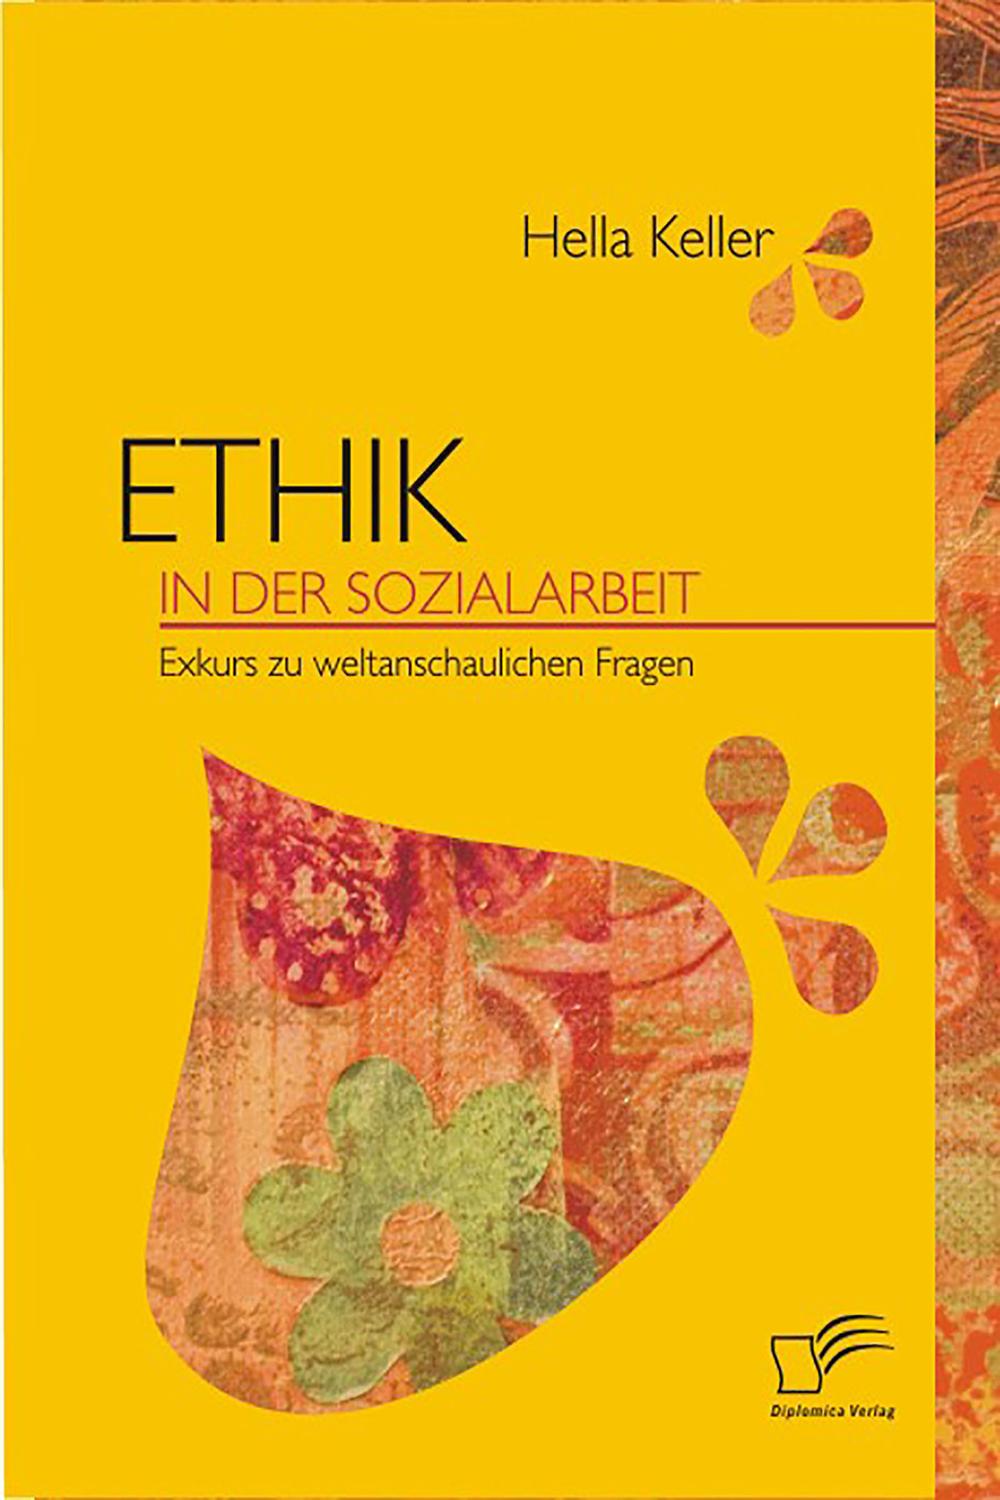 Ethik in der Sozialarbeit - Hella Keller